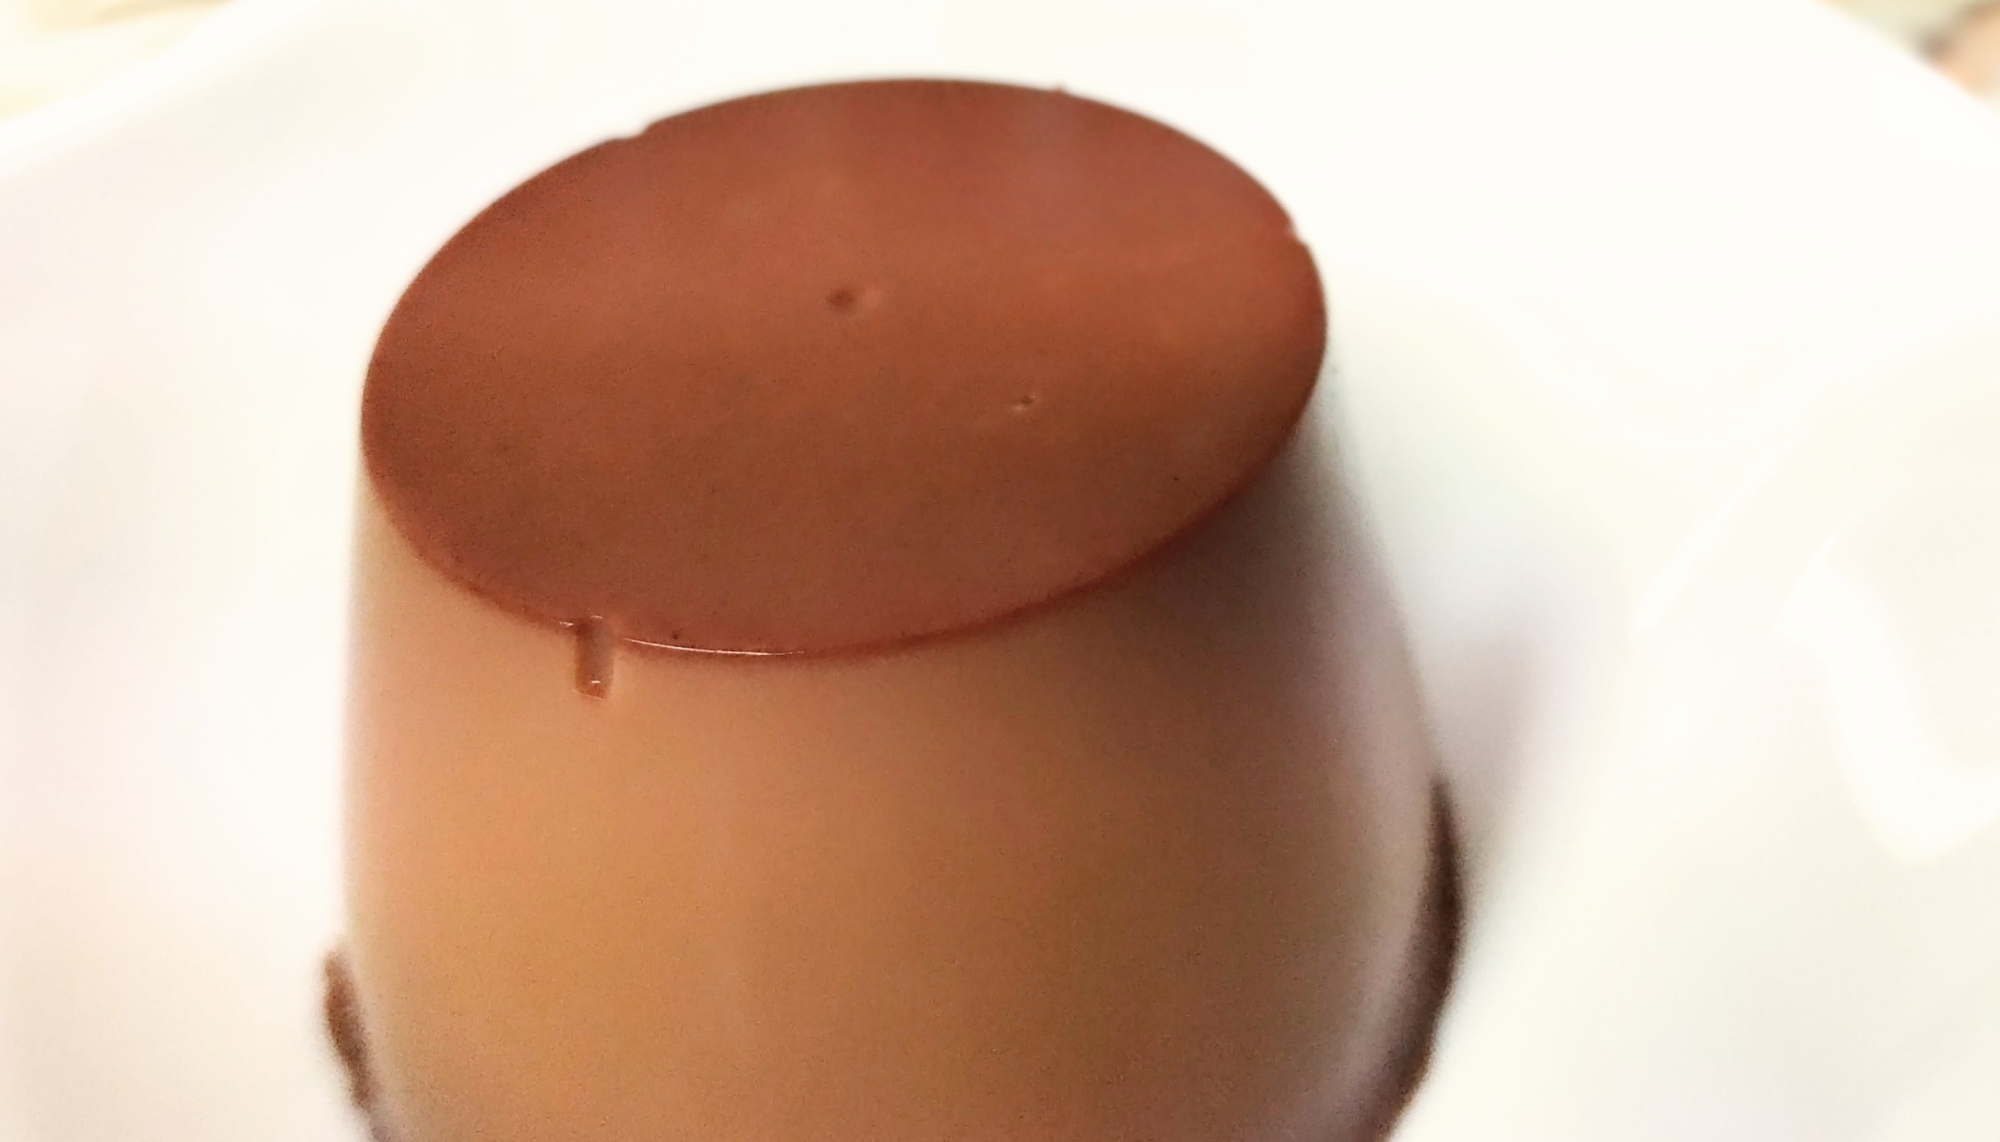 甘さ控えめ☕️コーヒー風味のチョコプリン